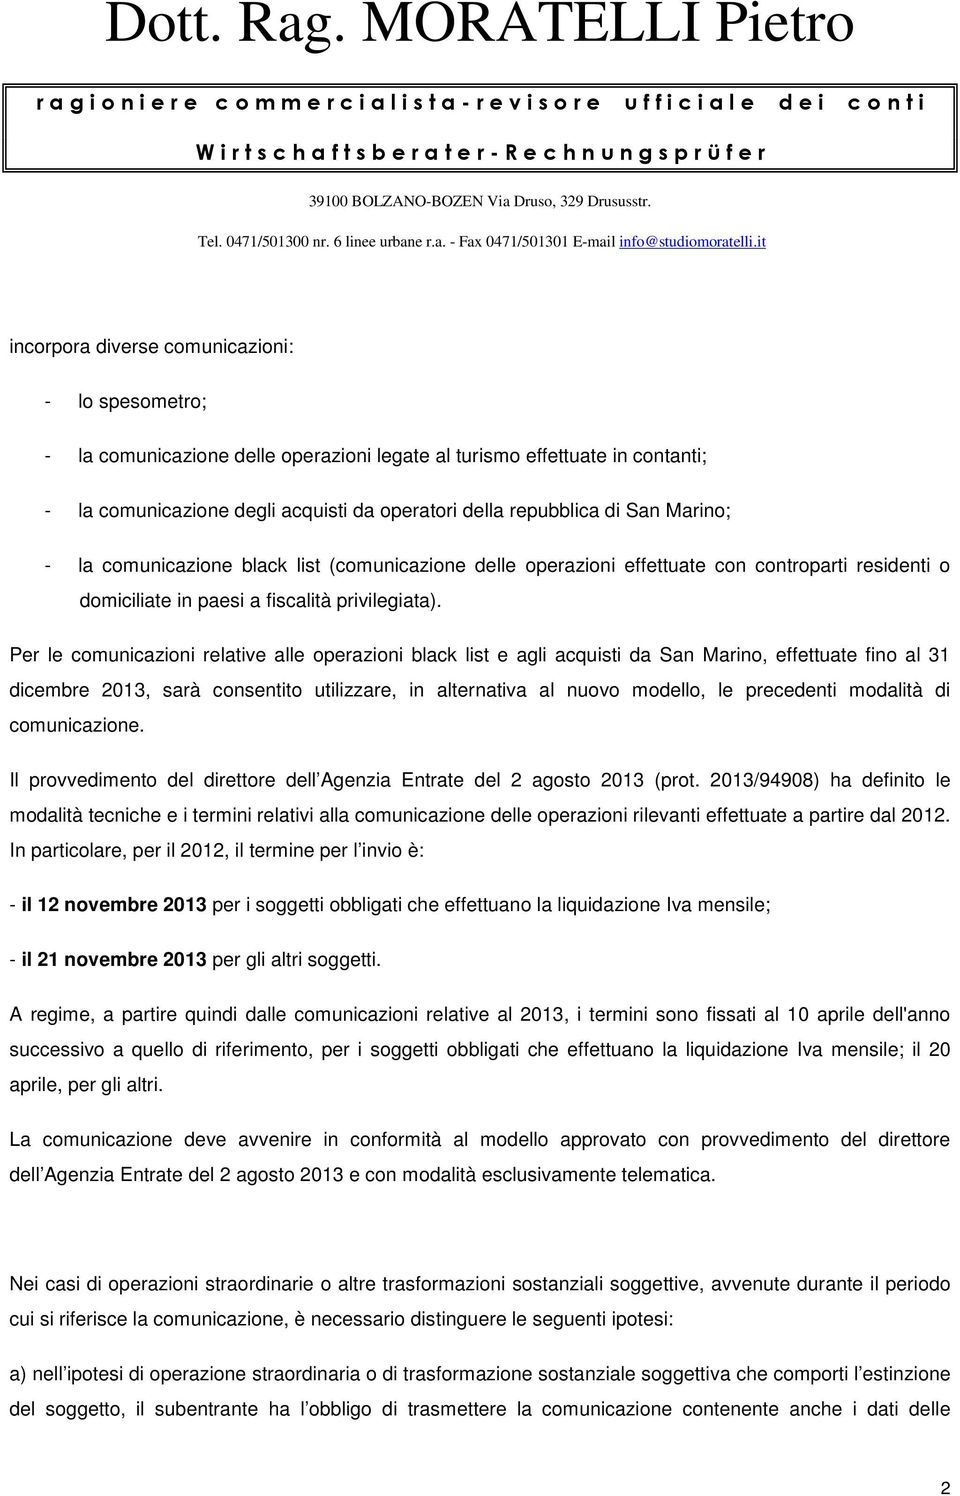 Per le comunicazioni relative alle operazioni black list e agli acquisti da San Marino, effettuate fino al 31 dicembre 2013, sarà consentito utilizzare, in alternativa al nuovo modello, le precedenti